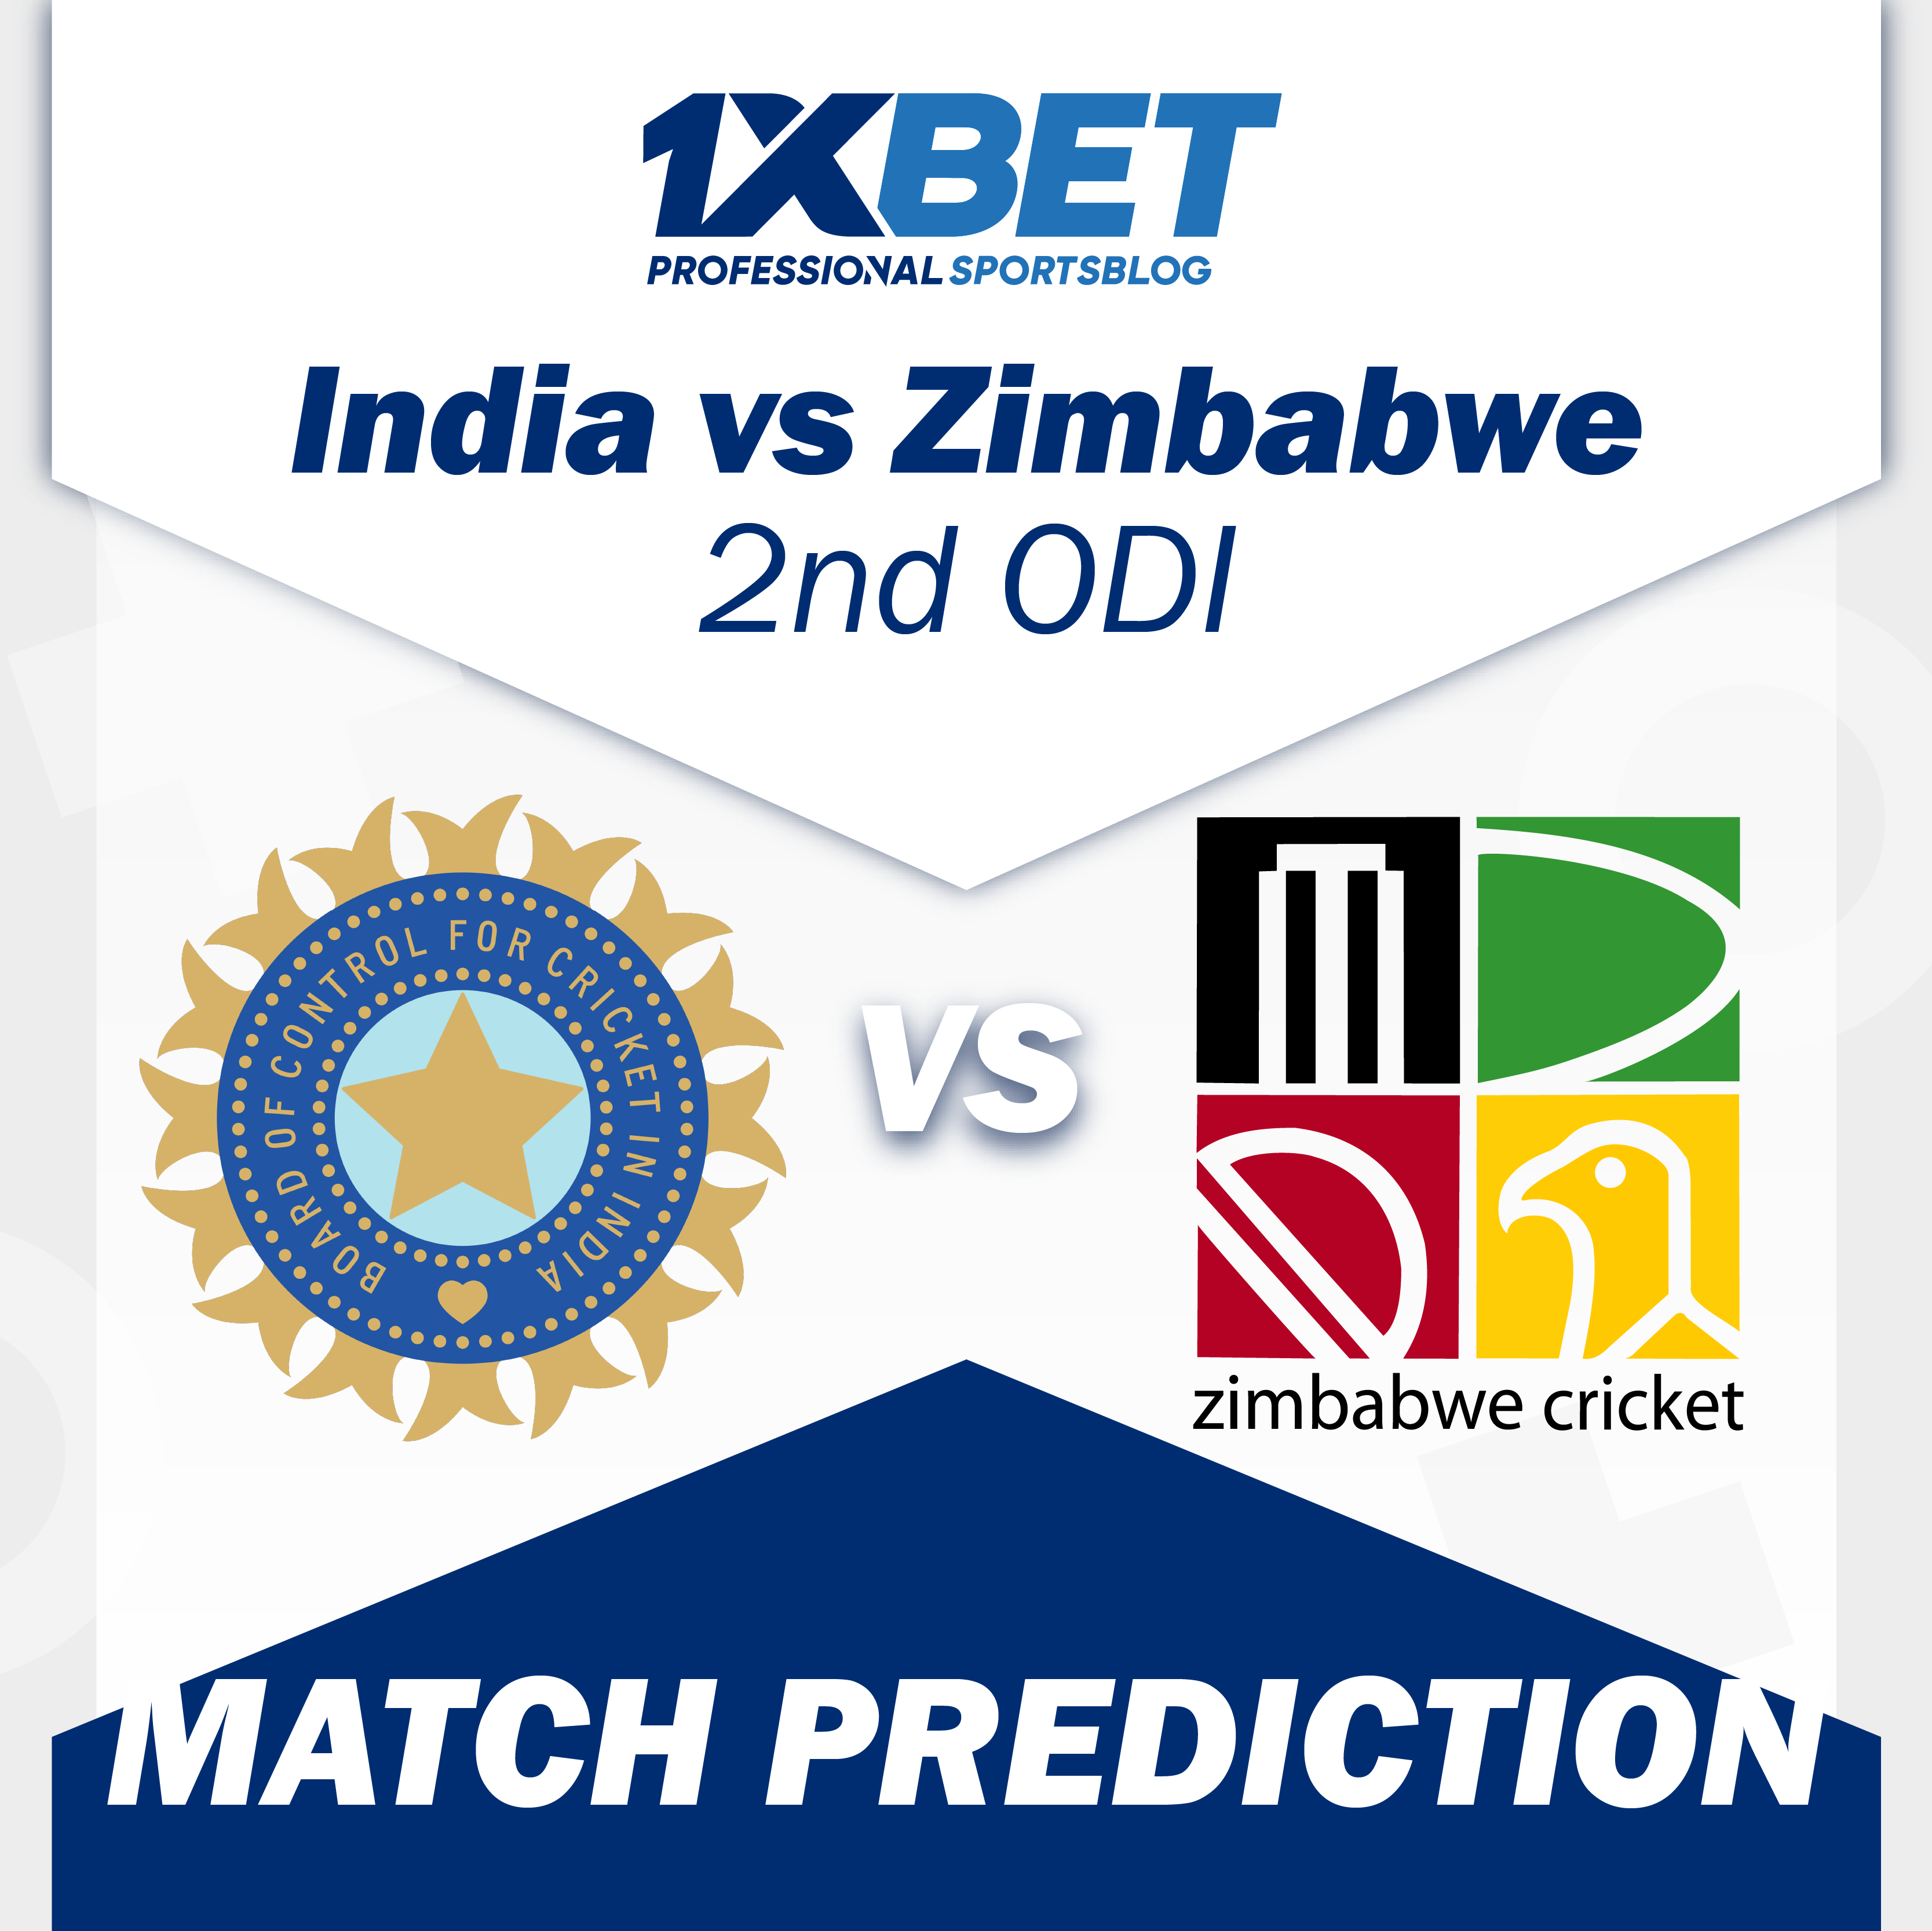 India vs Zimbabwe, 2nd ODI Match Prediction